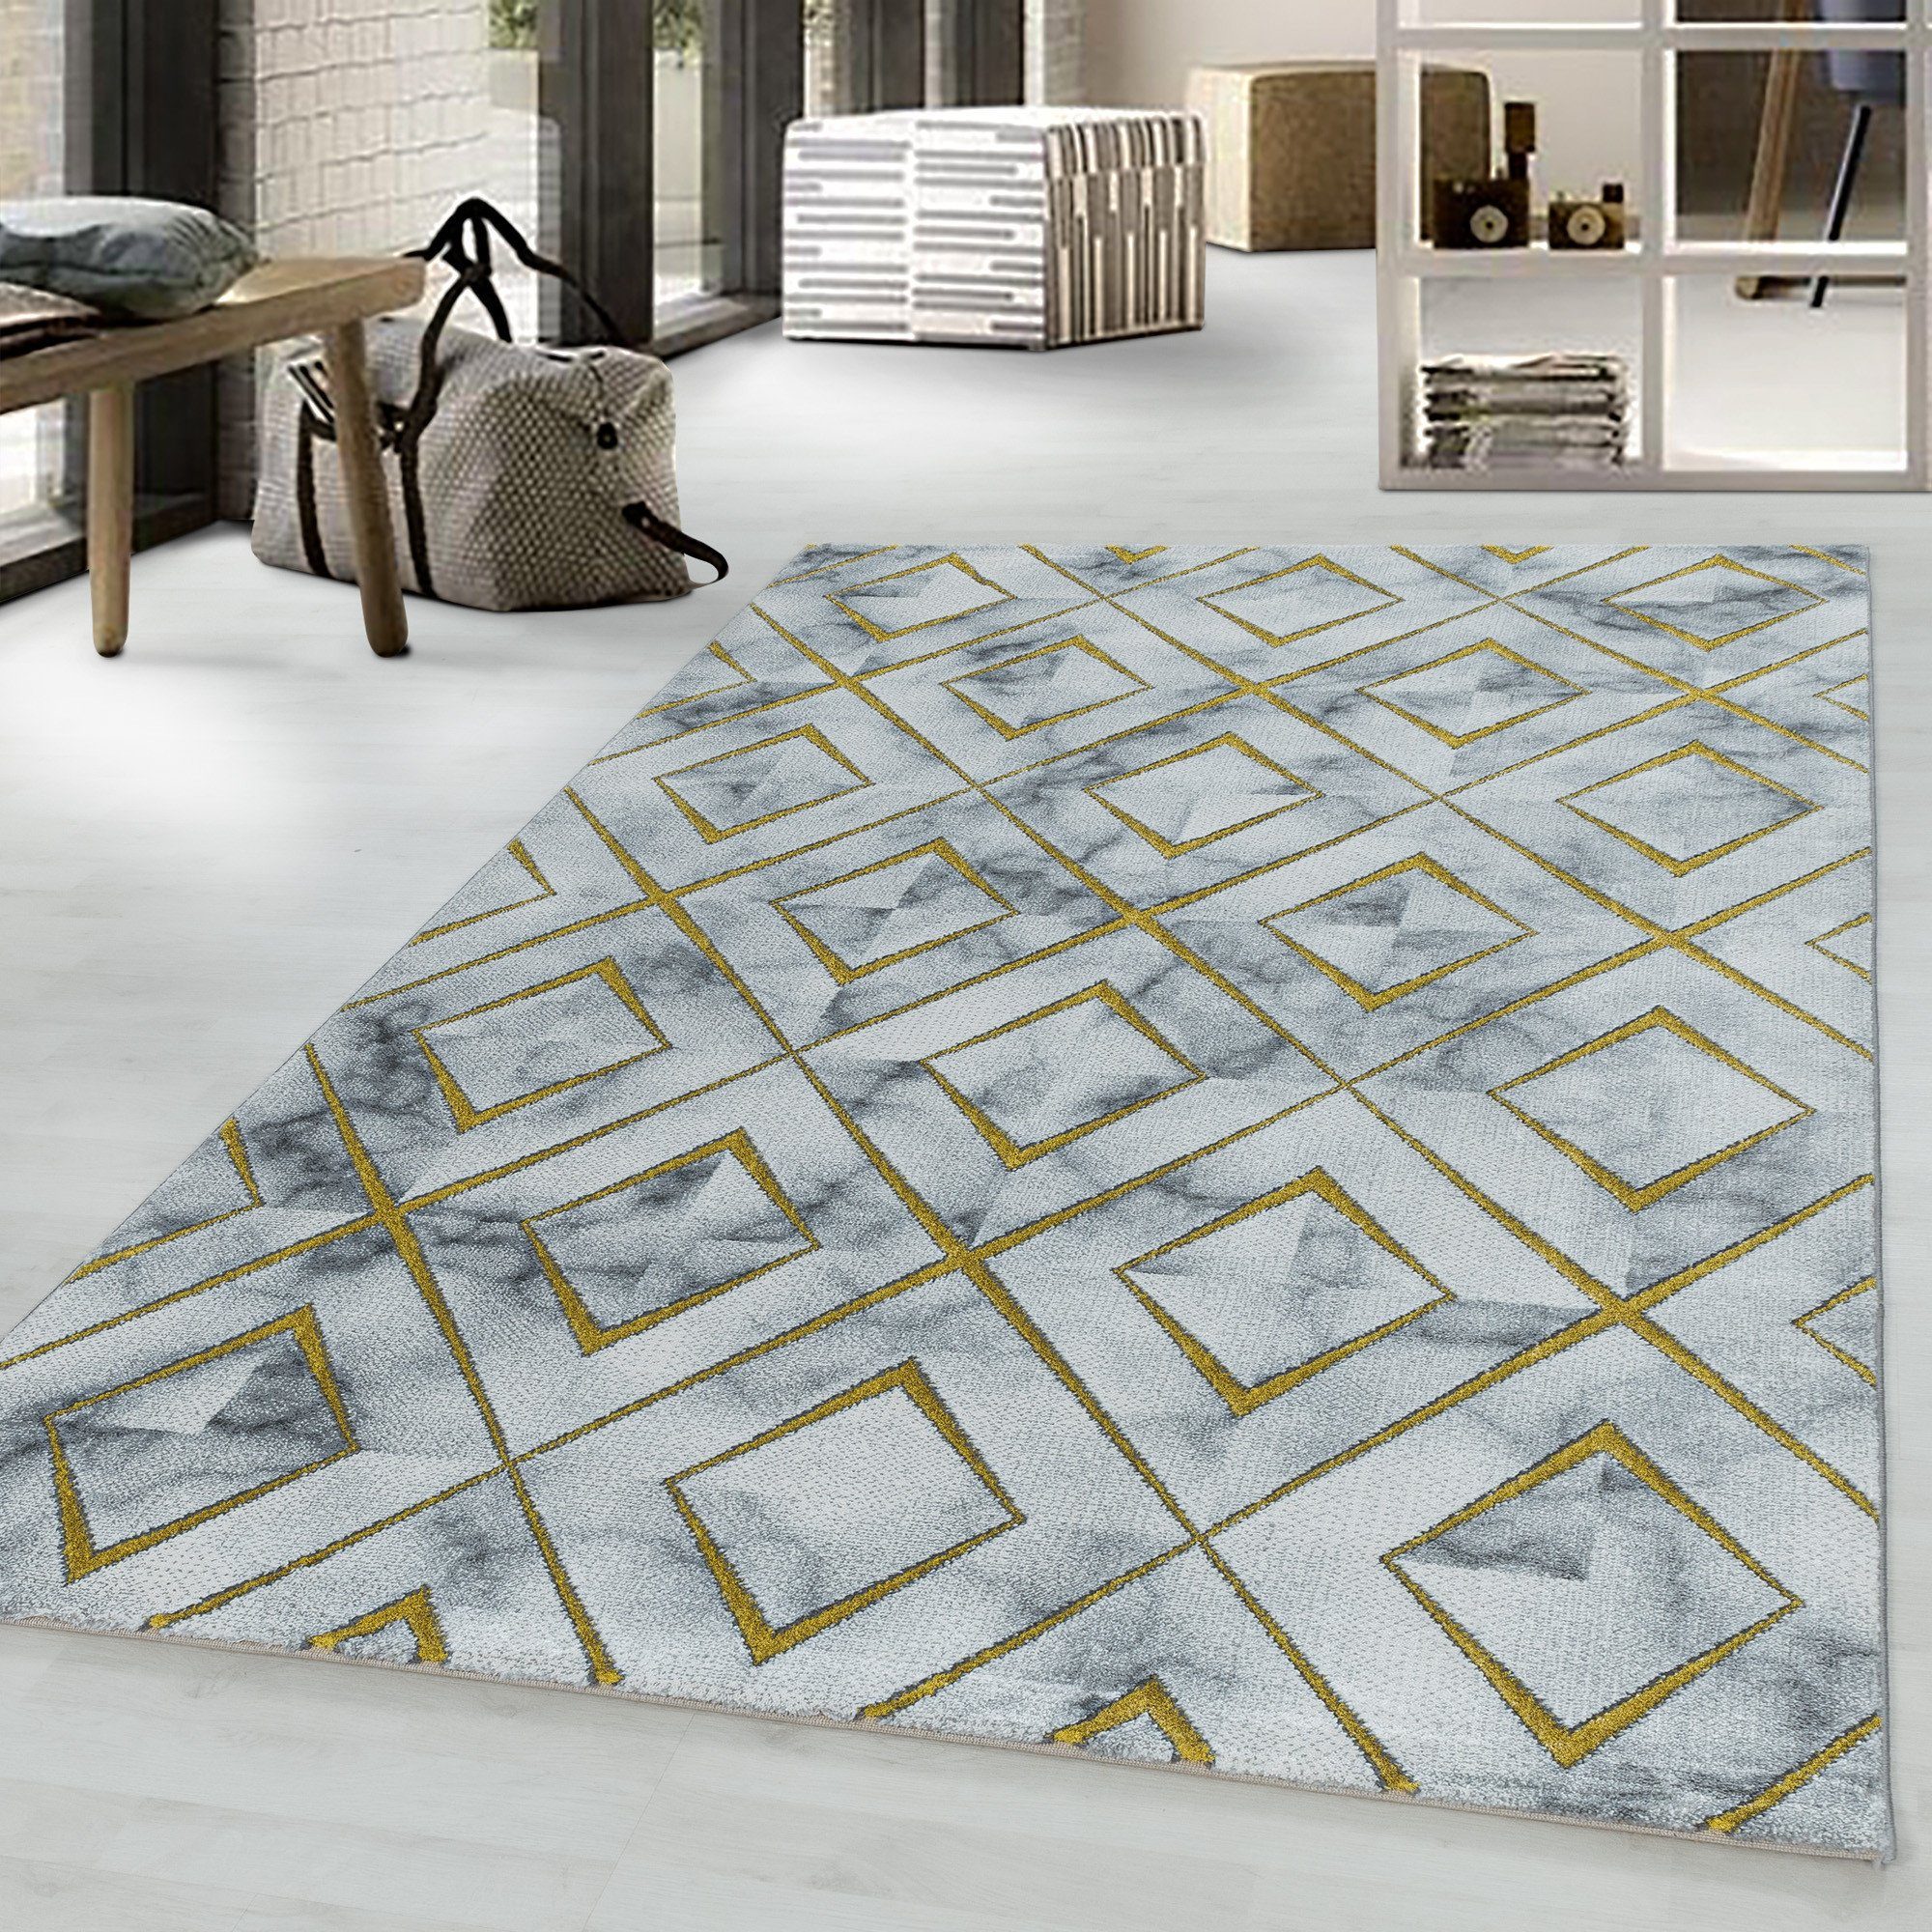 Designteppich Marmoroptik Flachflorteppich Kurzflorteppich Wohnzimmer Muster, Miovani Gold